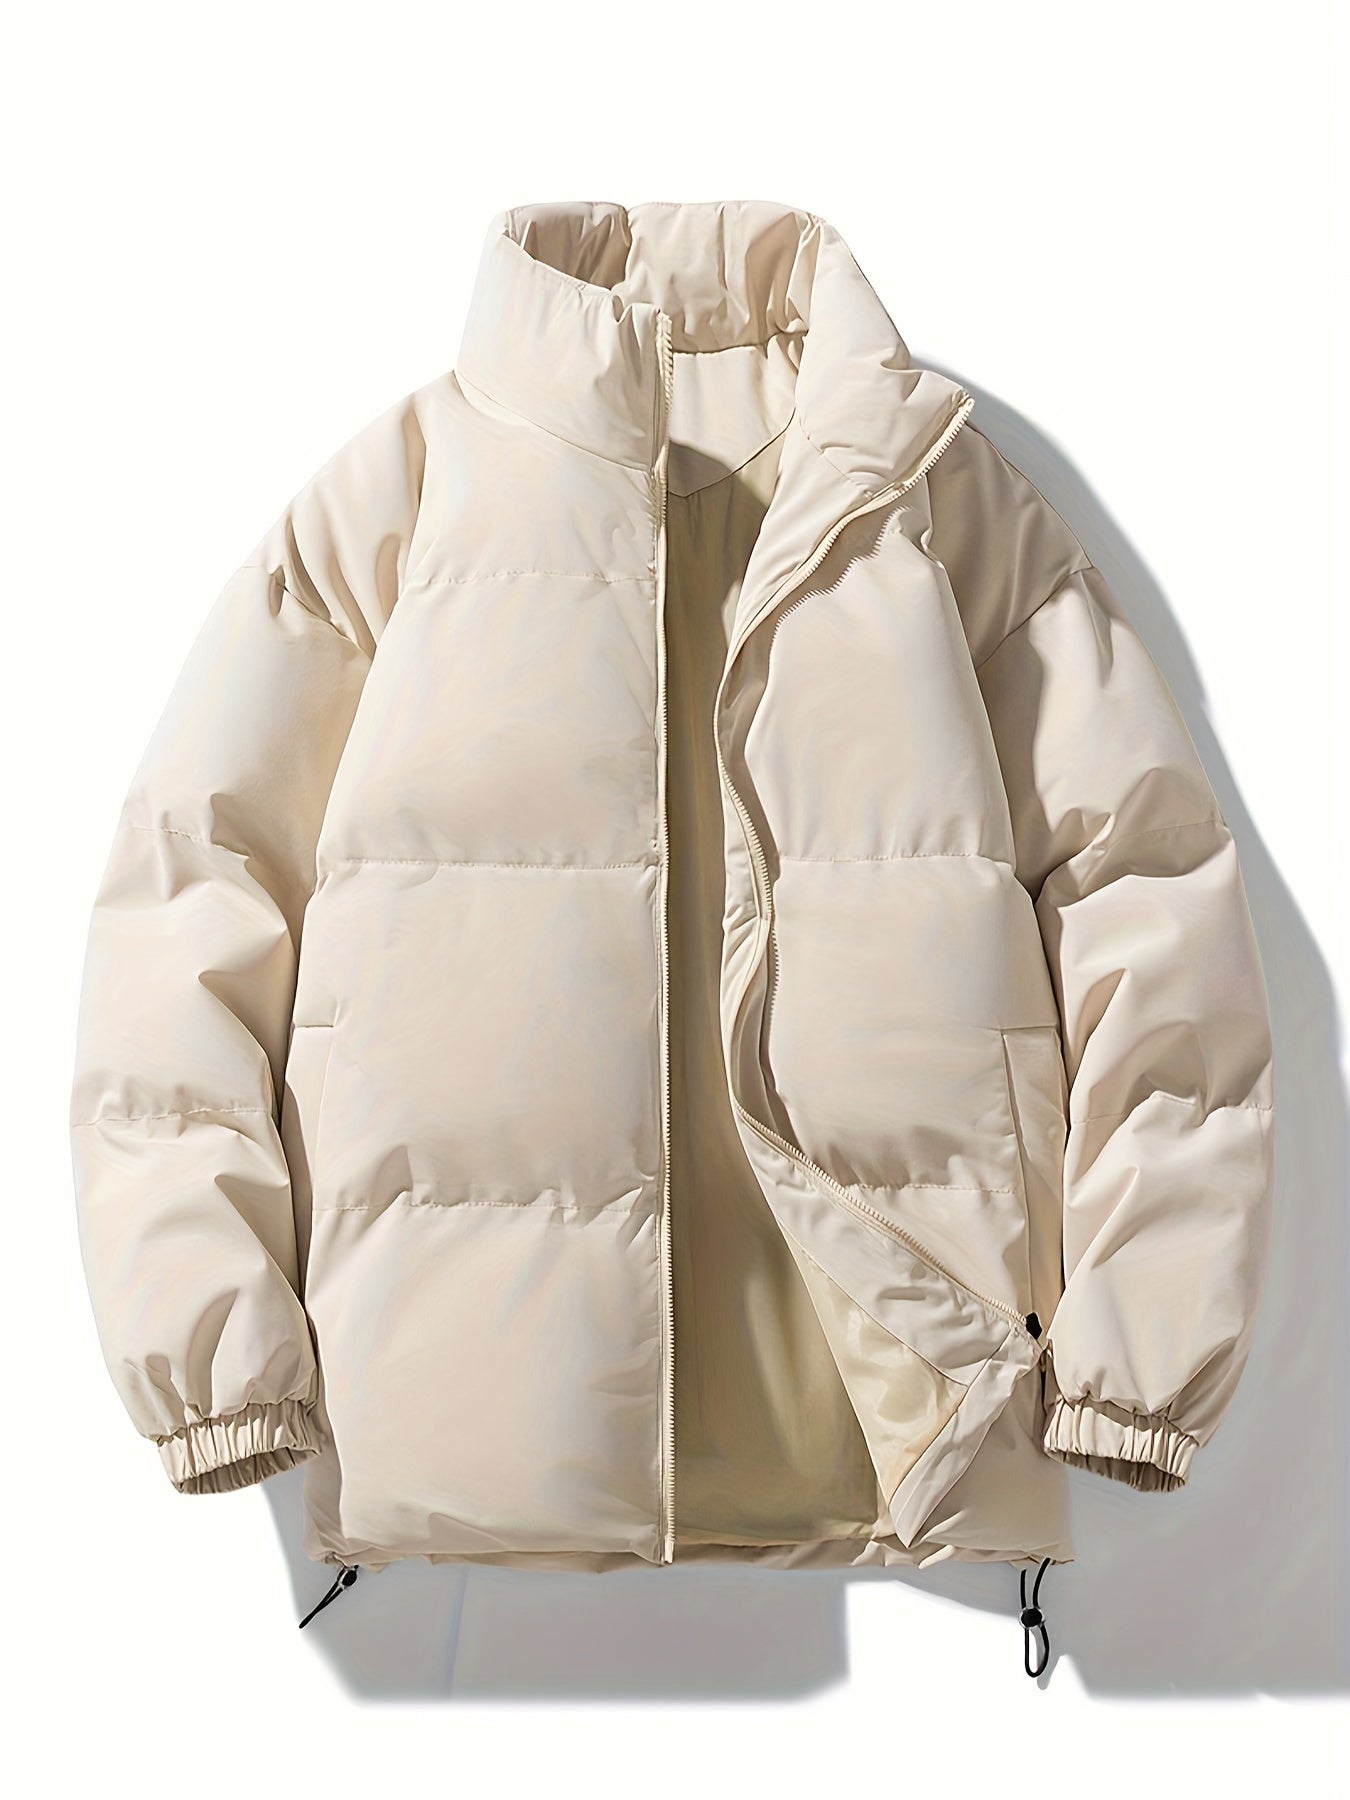 Men's Stylish Puffer Coat - Warm & Durable for Winter Outdoor Activities